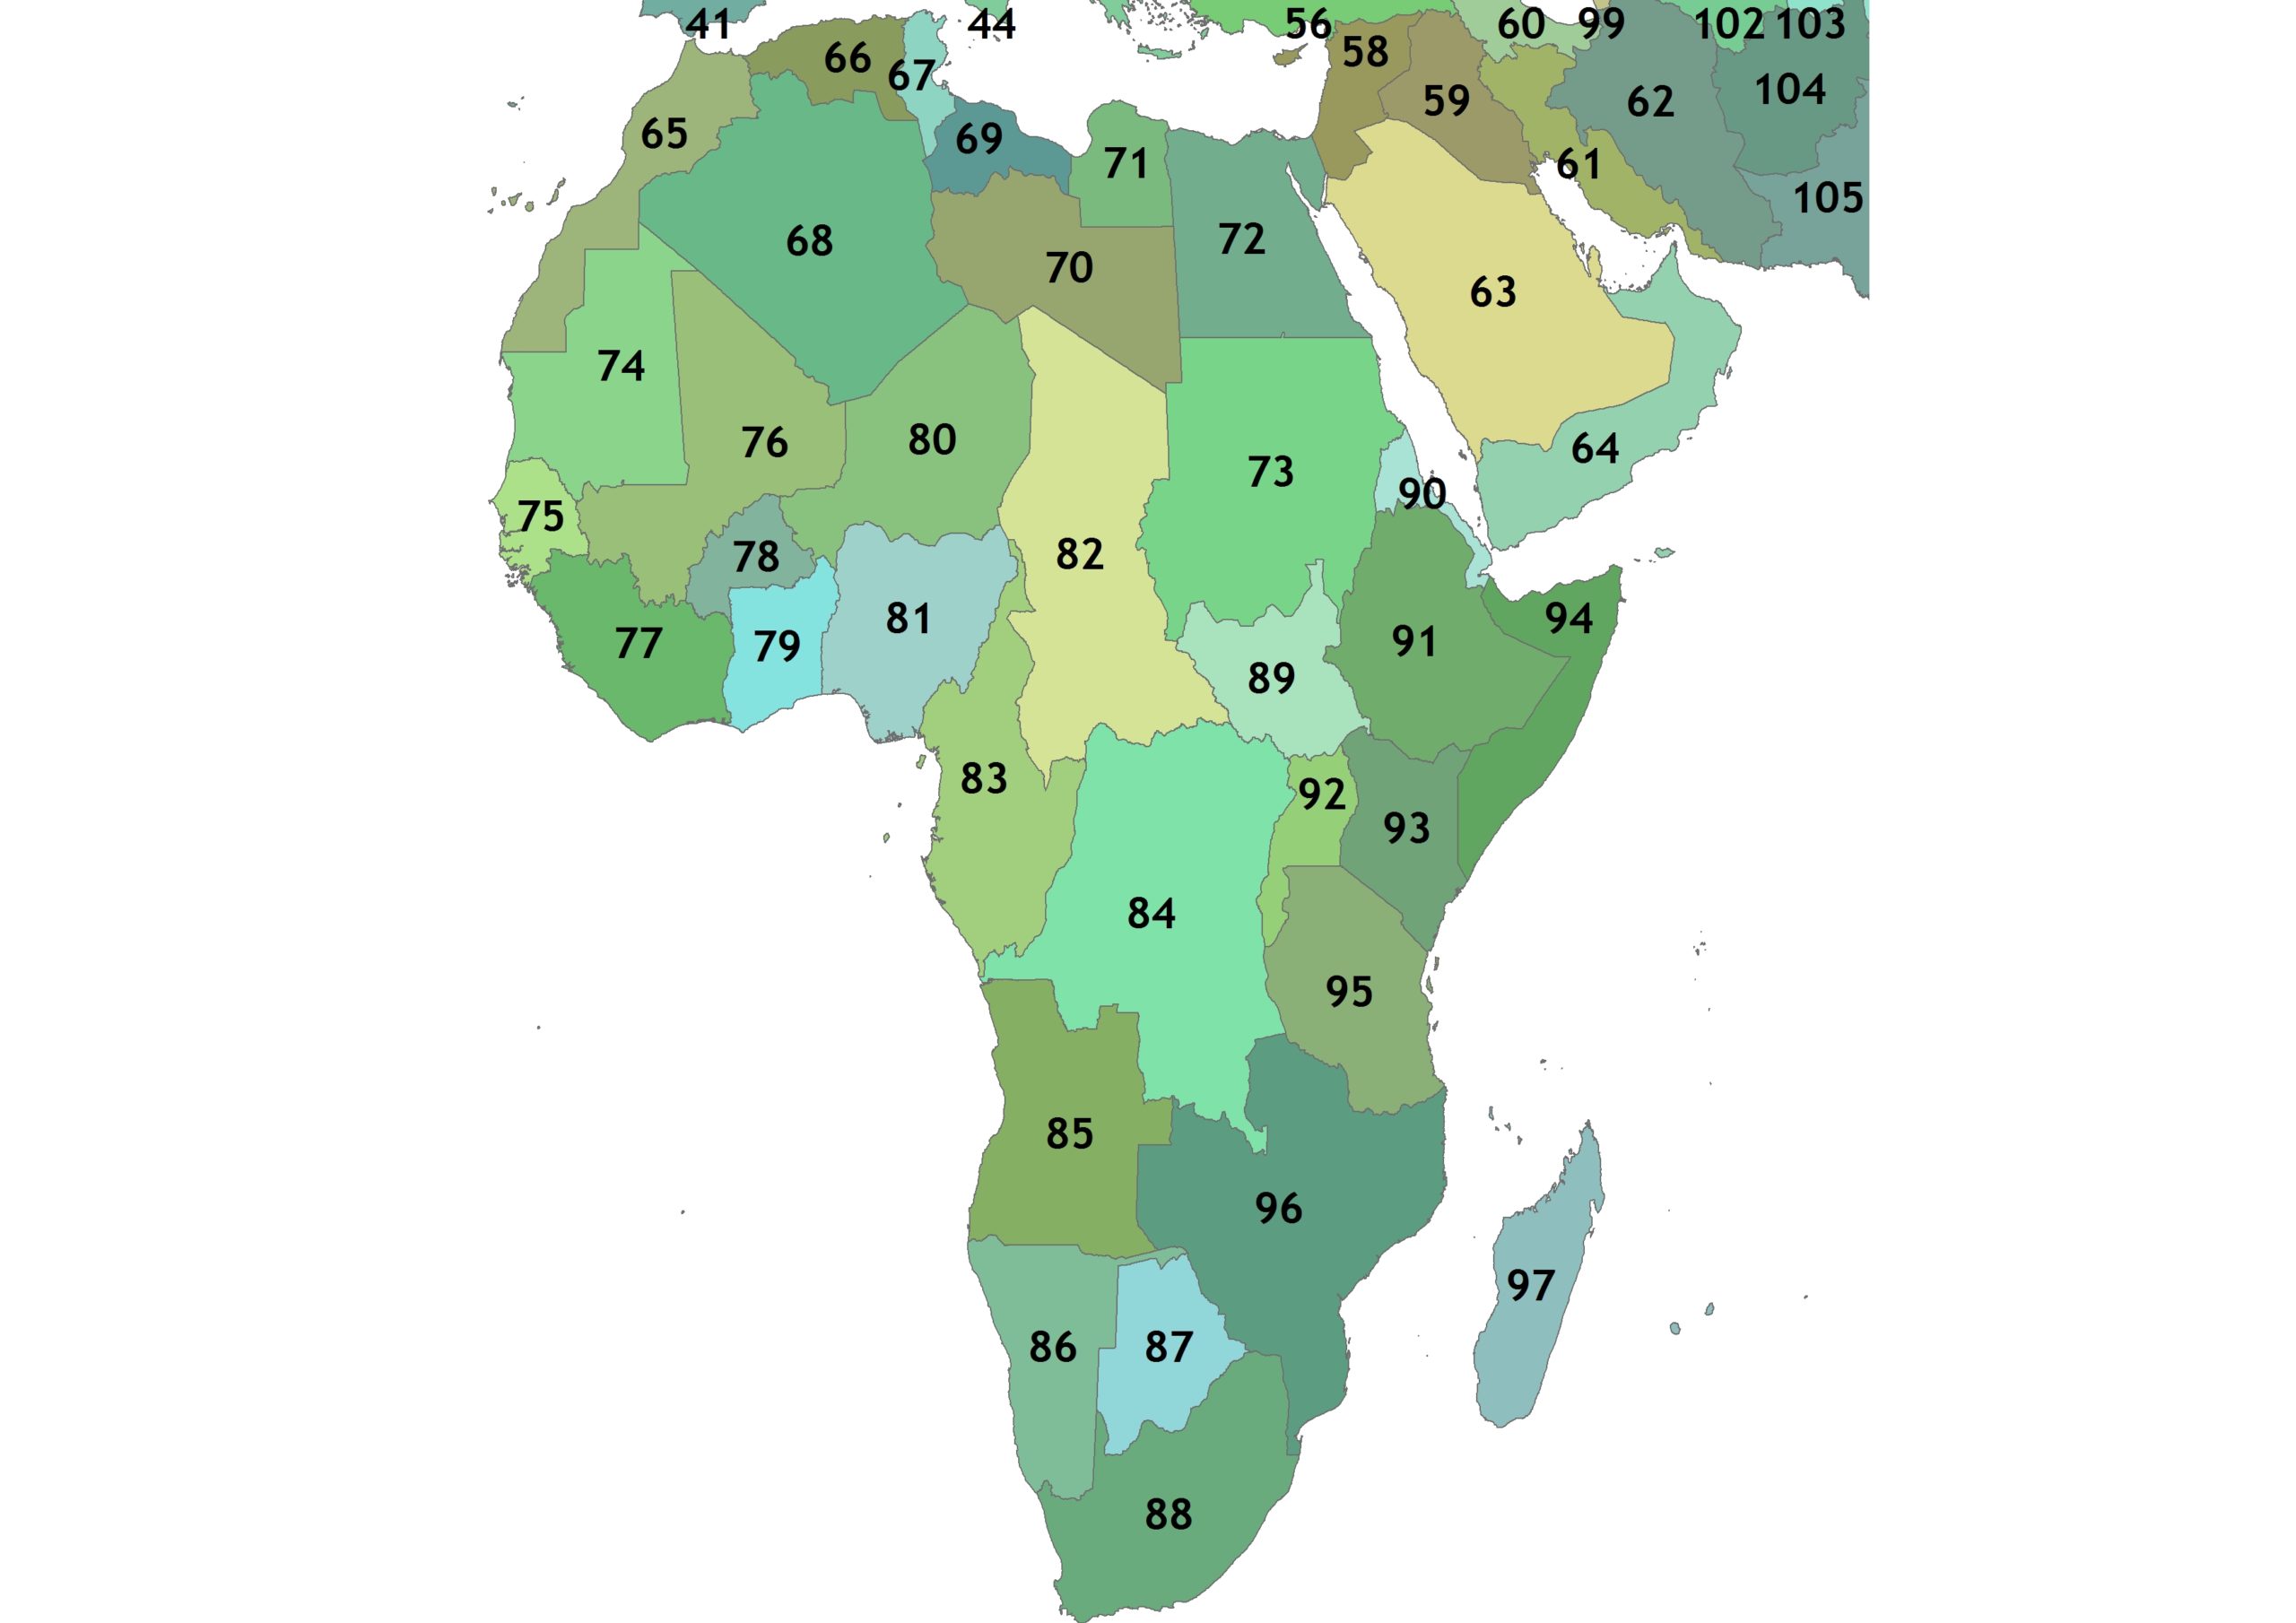 Africa-Regions